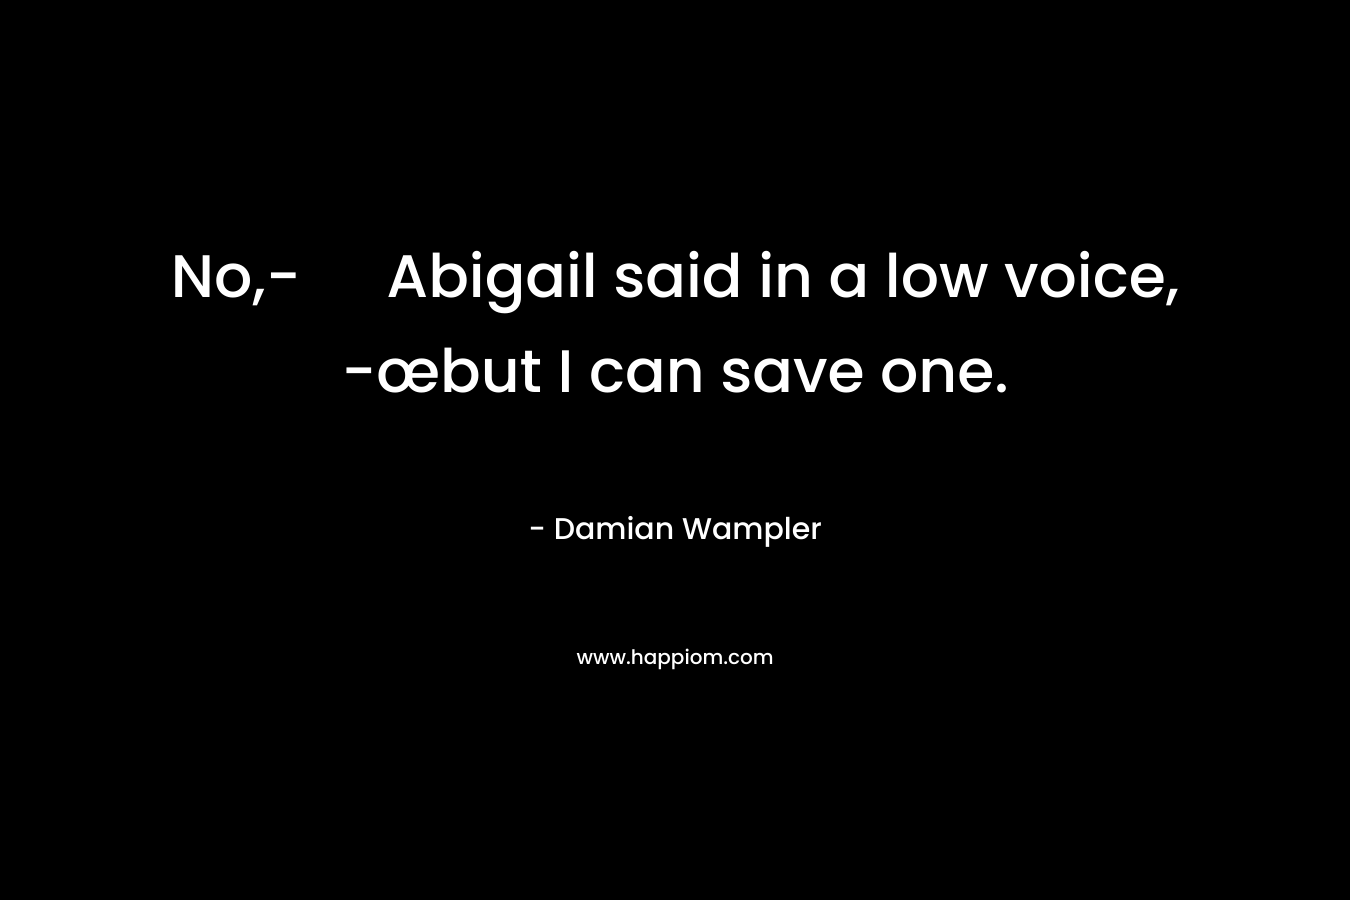 No,- Abigail said in a low voice, -œbut I can save one.